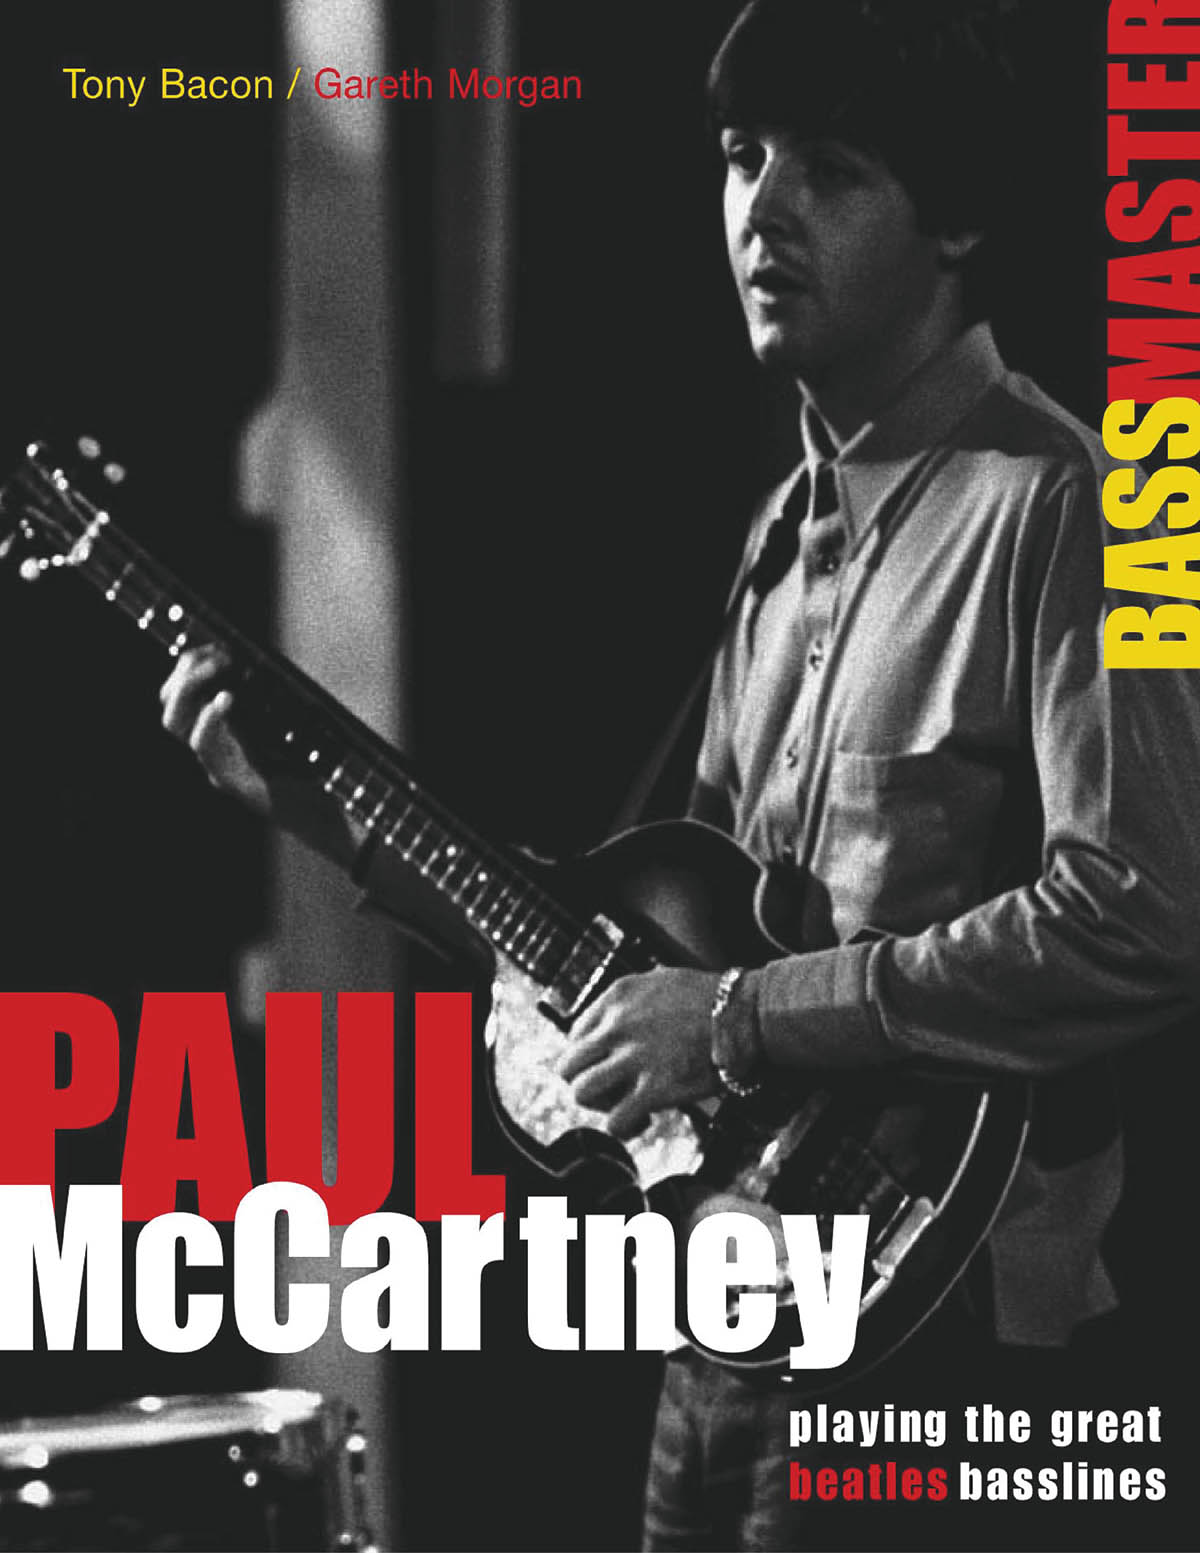 Paul McCartney - Bassmaster